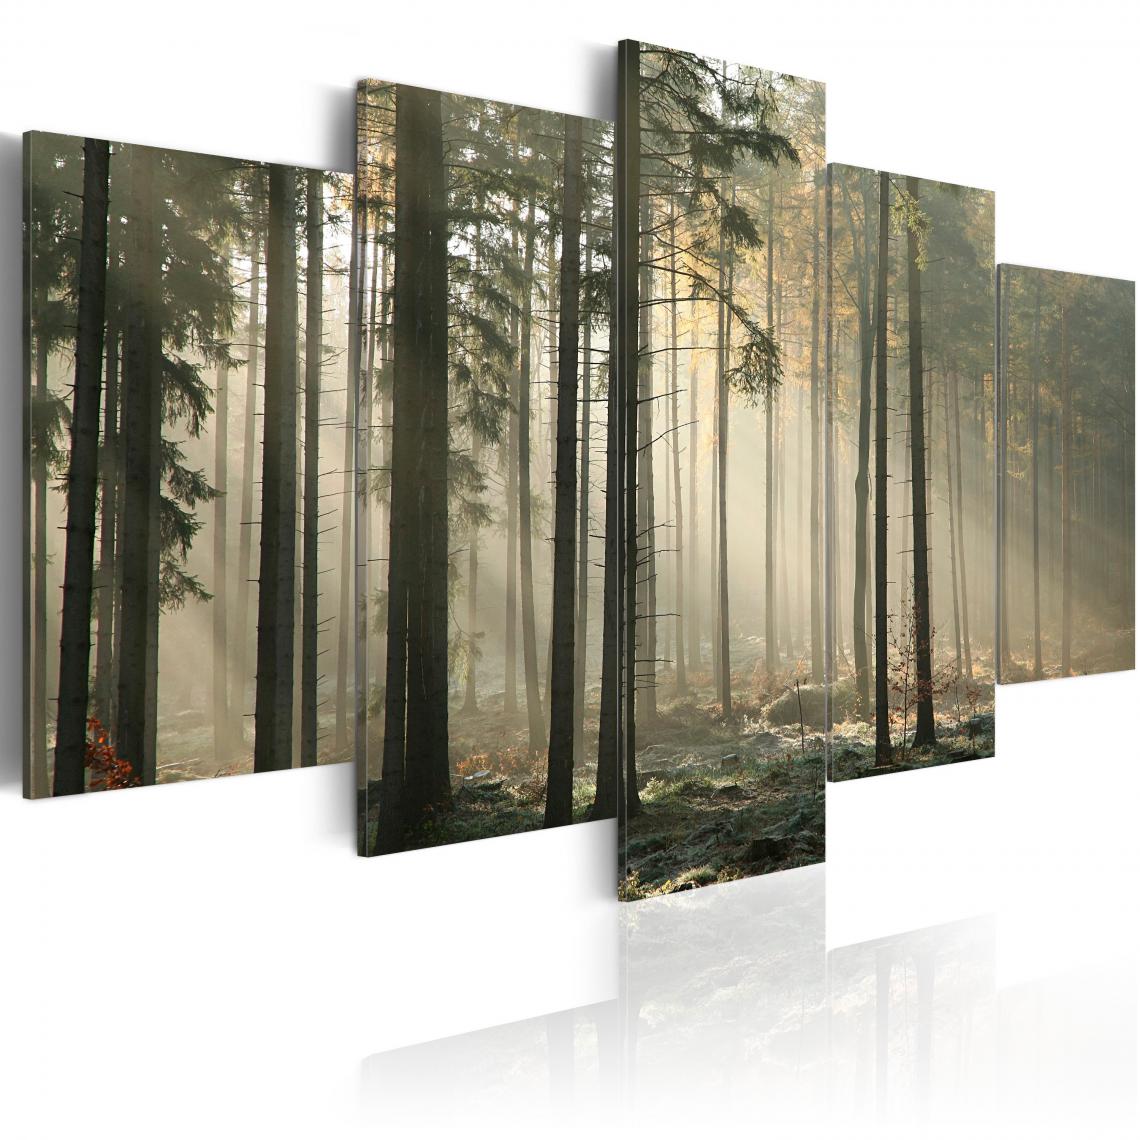 Decoshop26 - Tableau sur toile en 5 panneaux décoration murale image imprimée cadre en bois à suspendre Lumière dans une sombre forêt 100x50 cm 11_0006117 - Tableaux, peintures